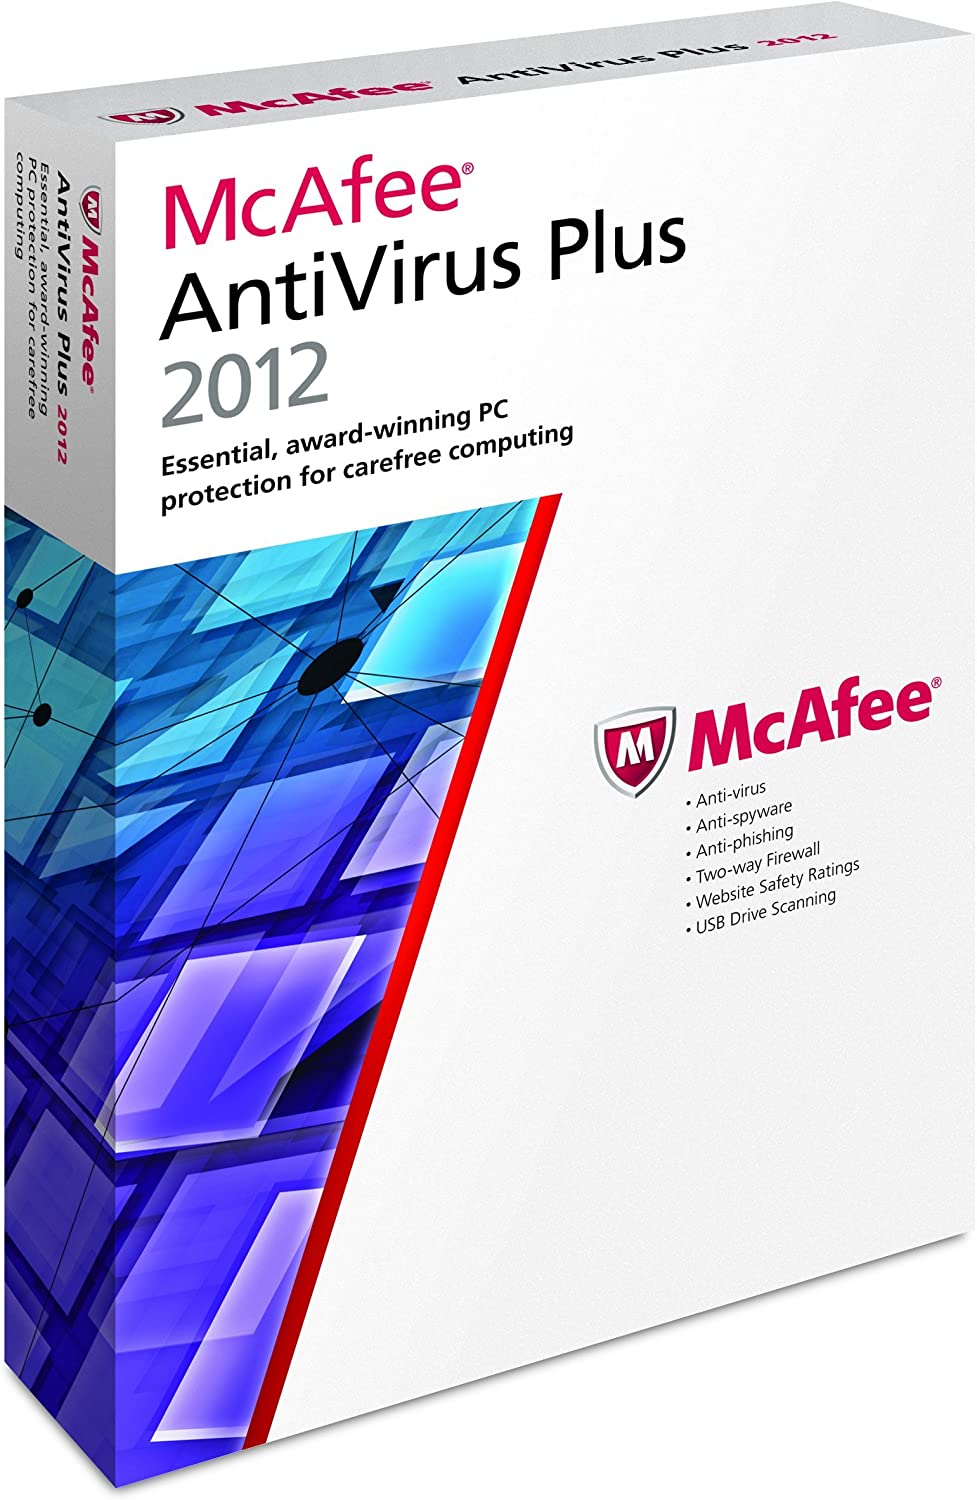 mcafee anti virus plus download 2012